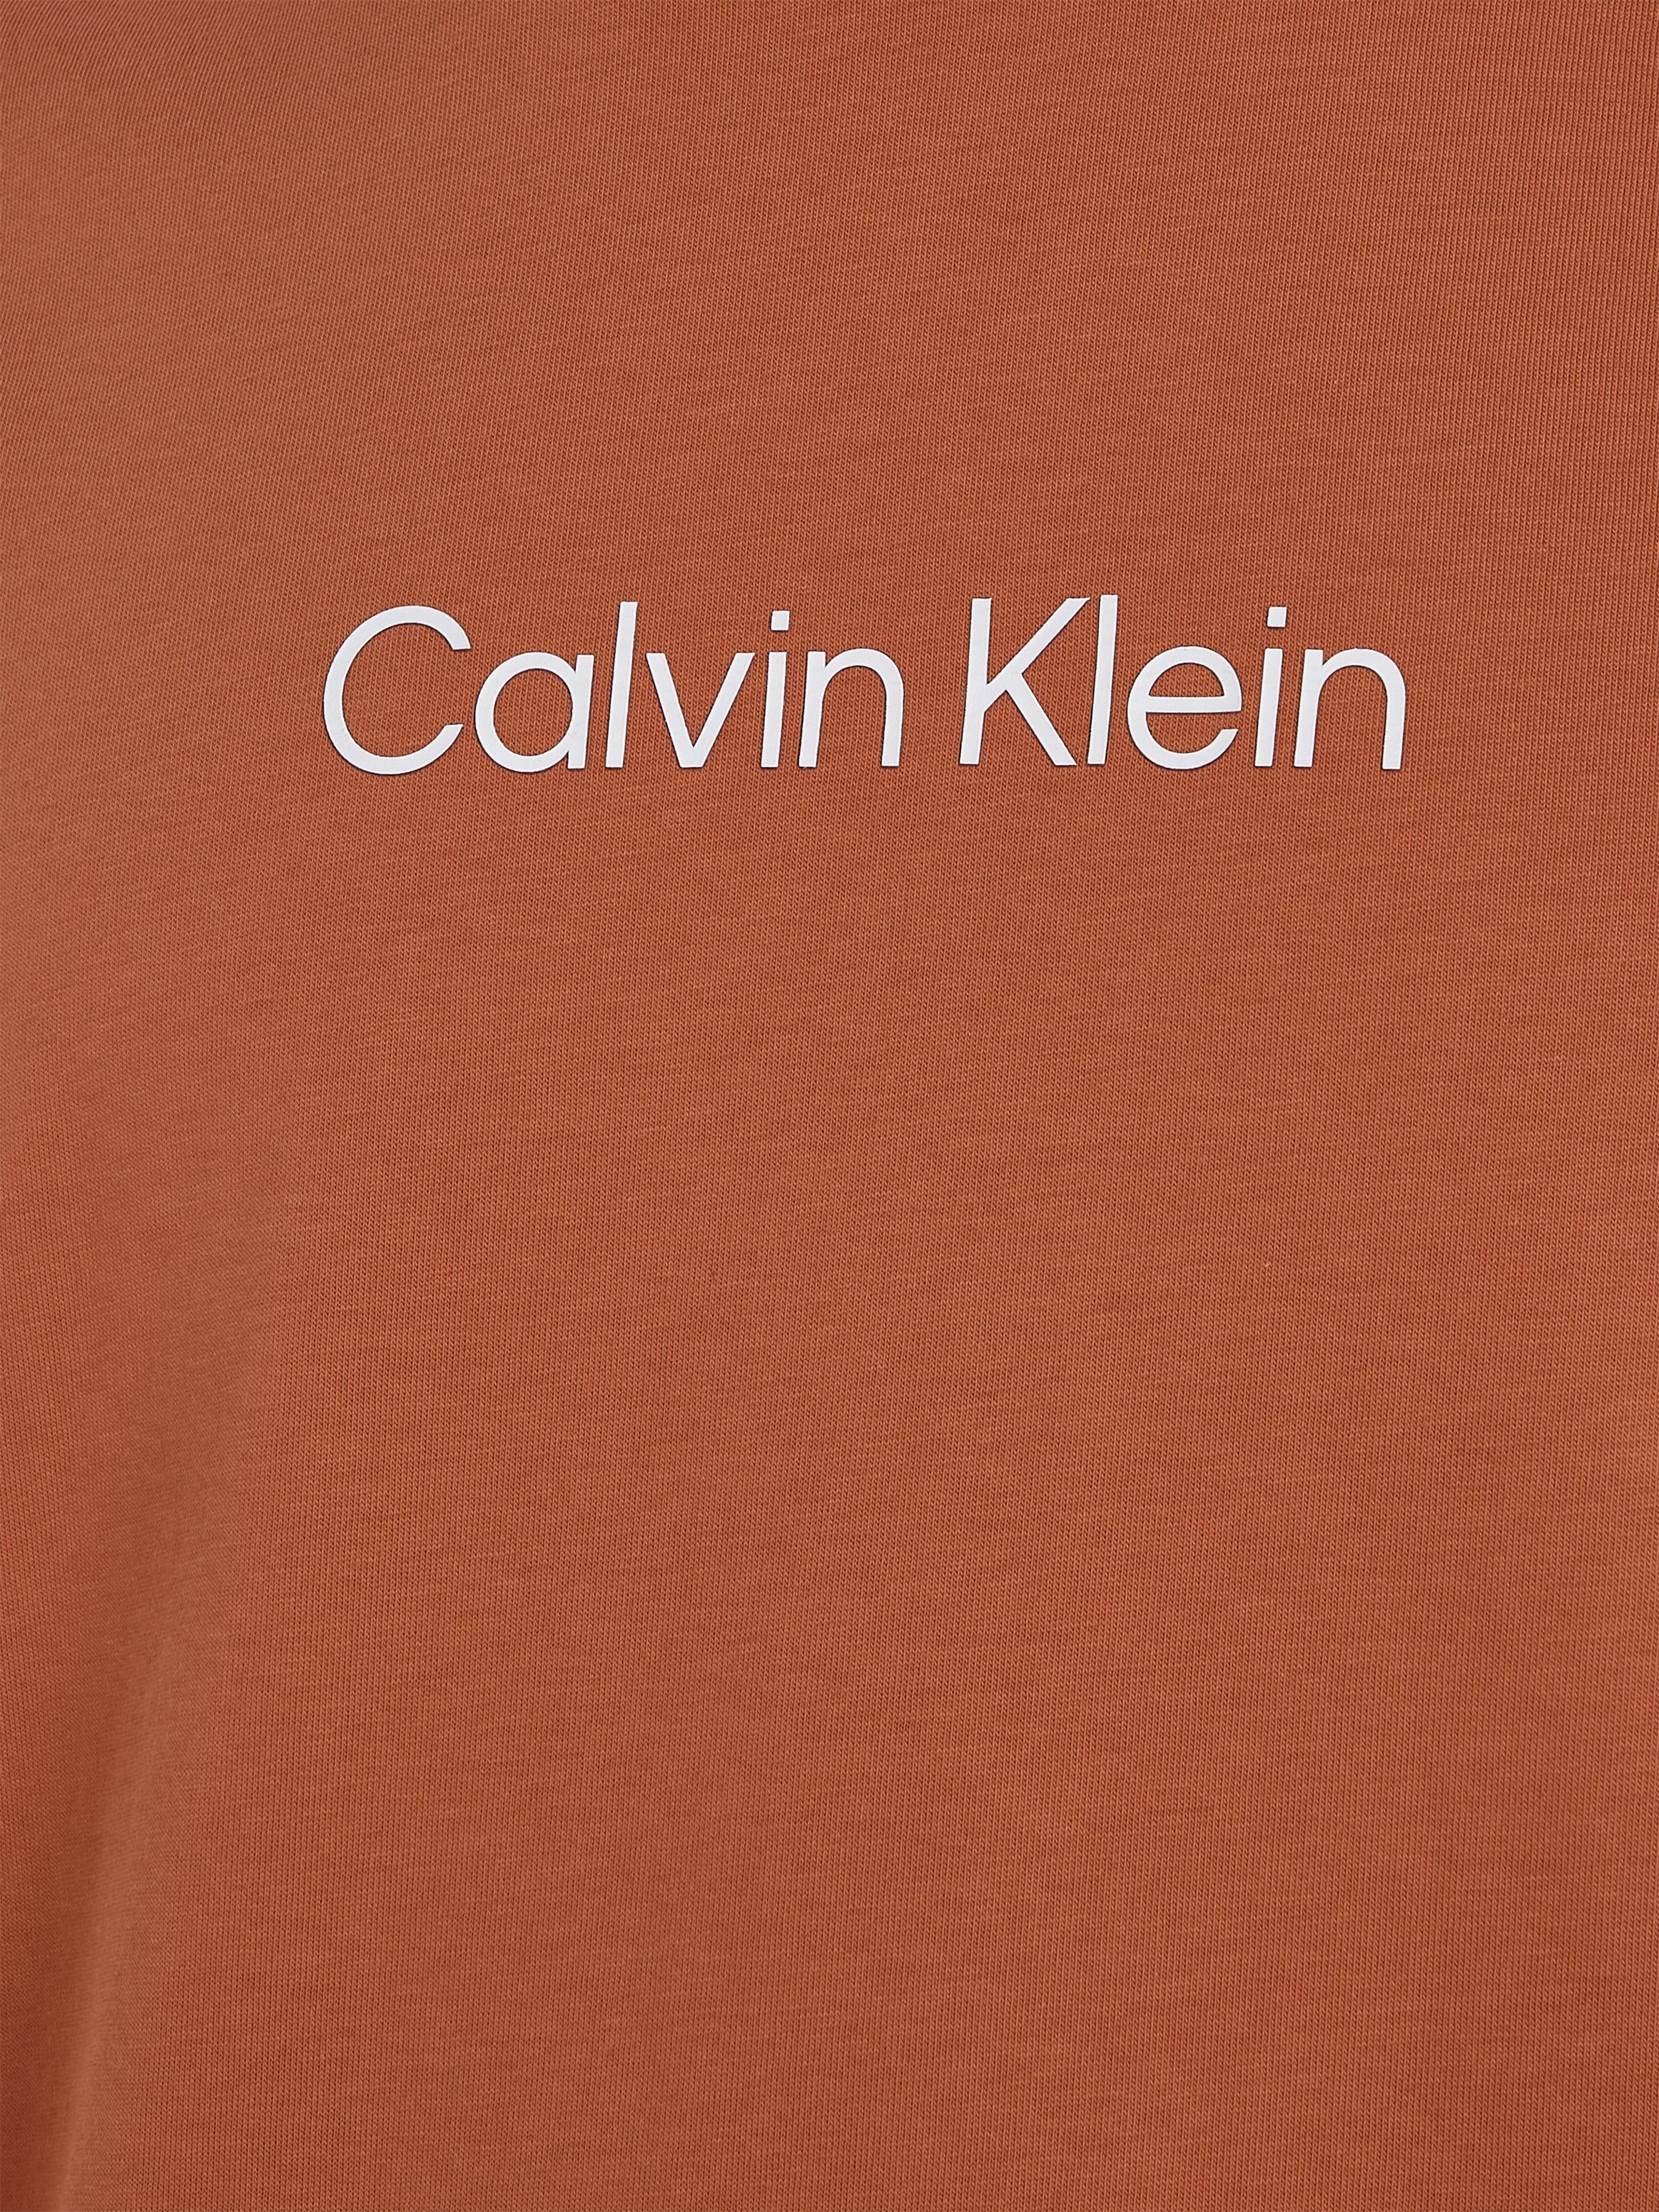 COMFORT mit LOGO Sun Calvin T-Shirt aufgedrucktem Copper Klein Markenlabel T-SHIRT HERO